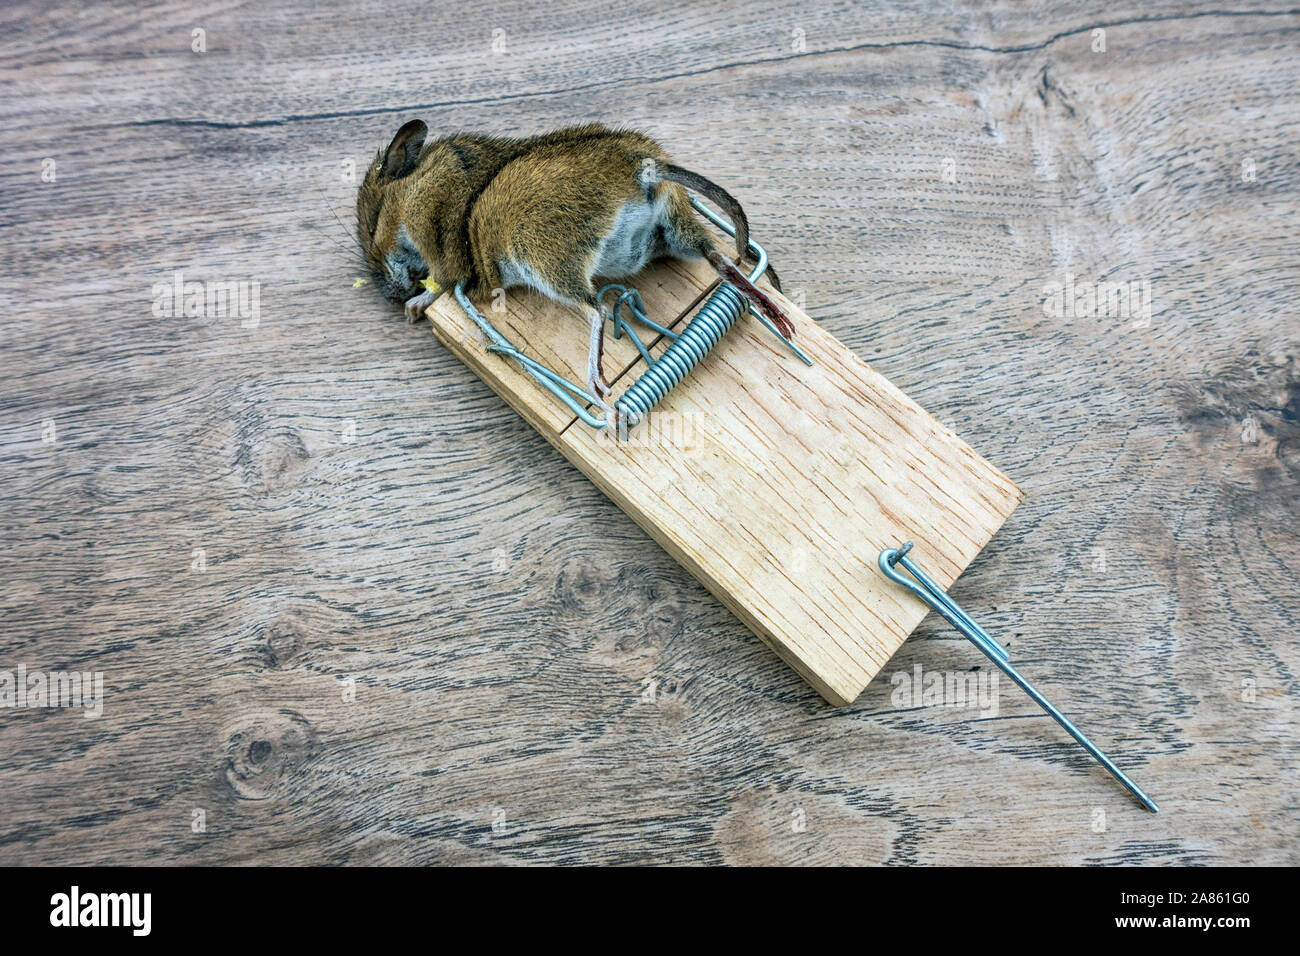 Primo piano di un topo morto nella trappola del mouse Foto Stock